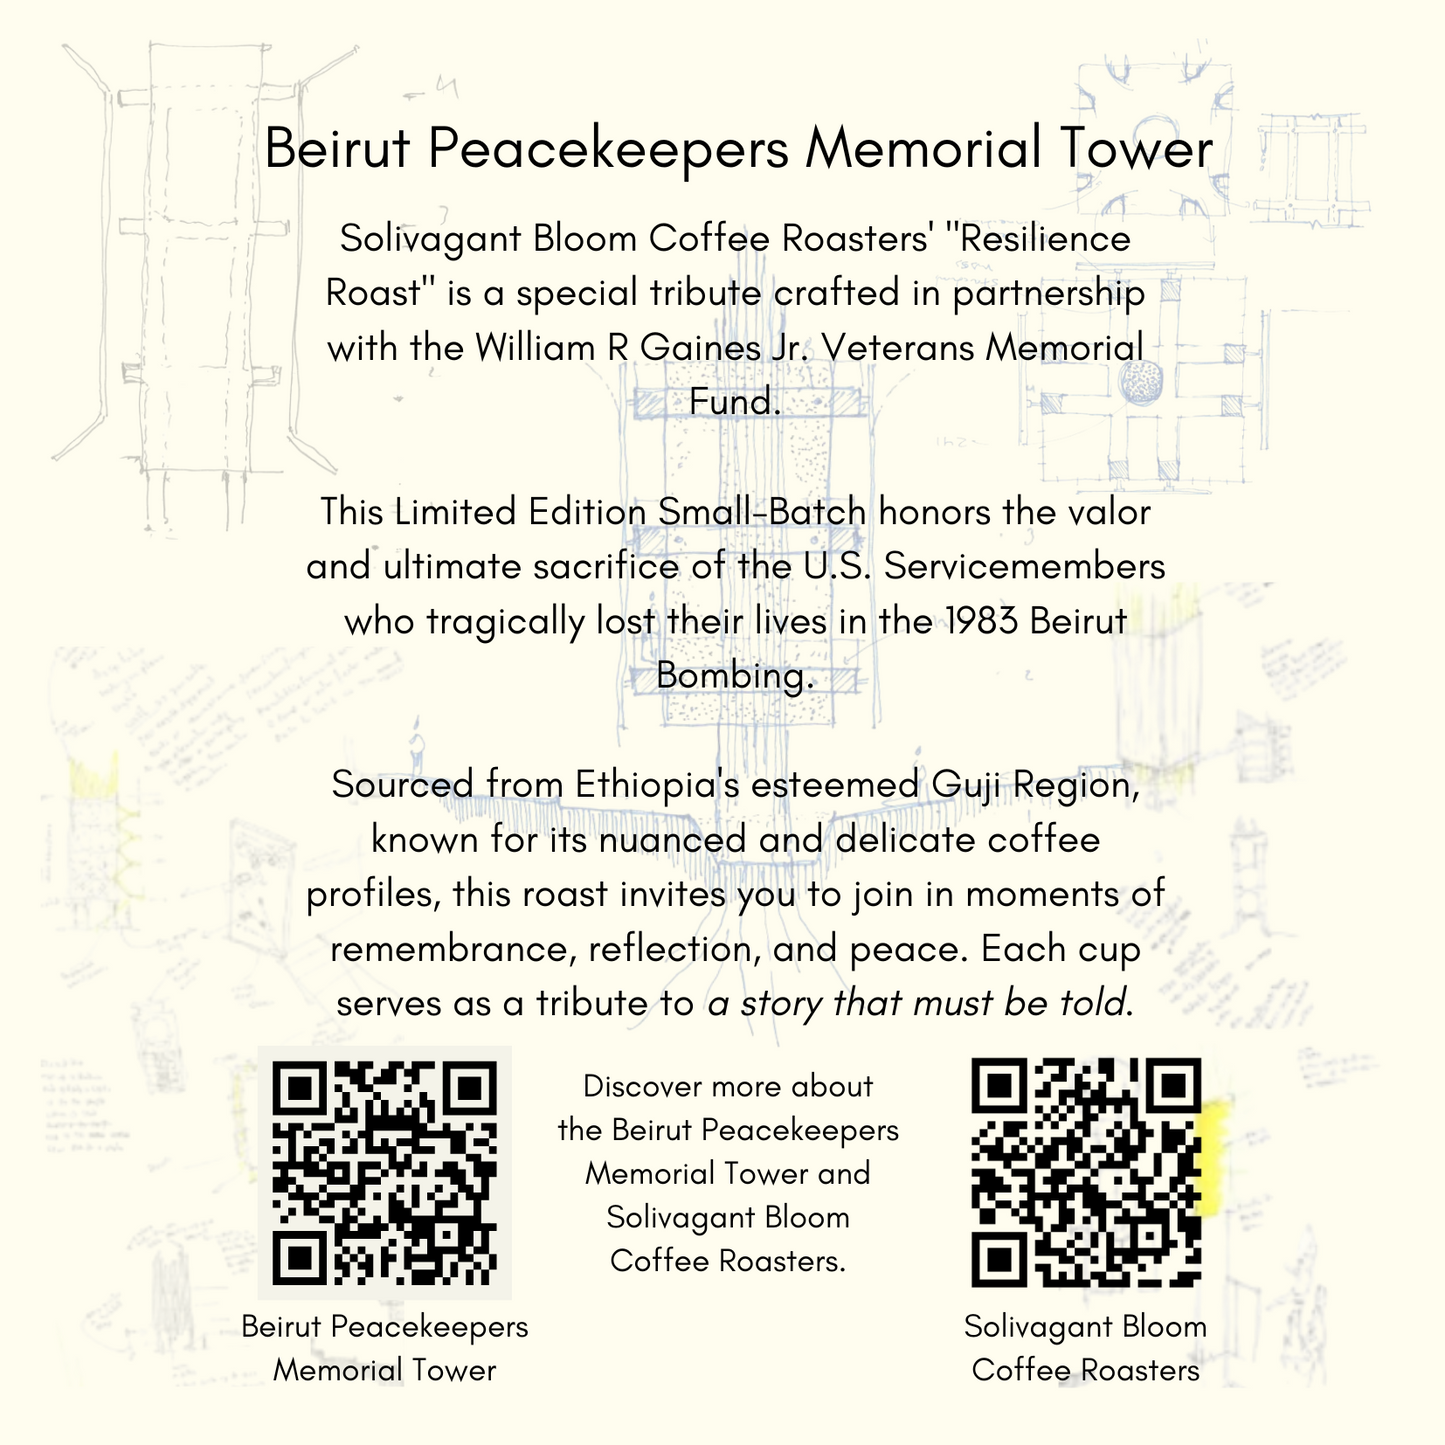 Beirut Peacekeeper Memorial Tower "Resilience Roast"